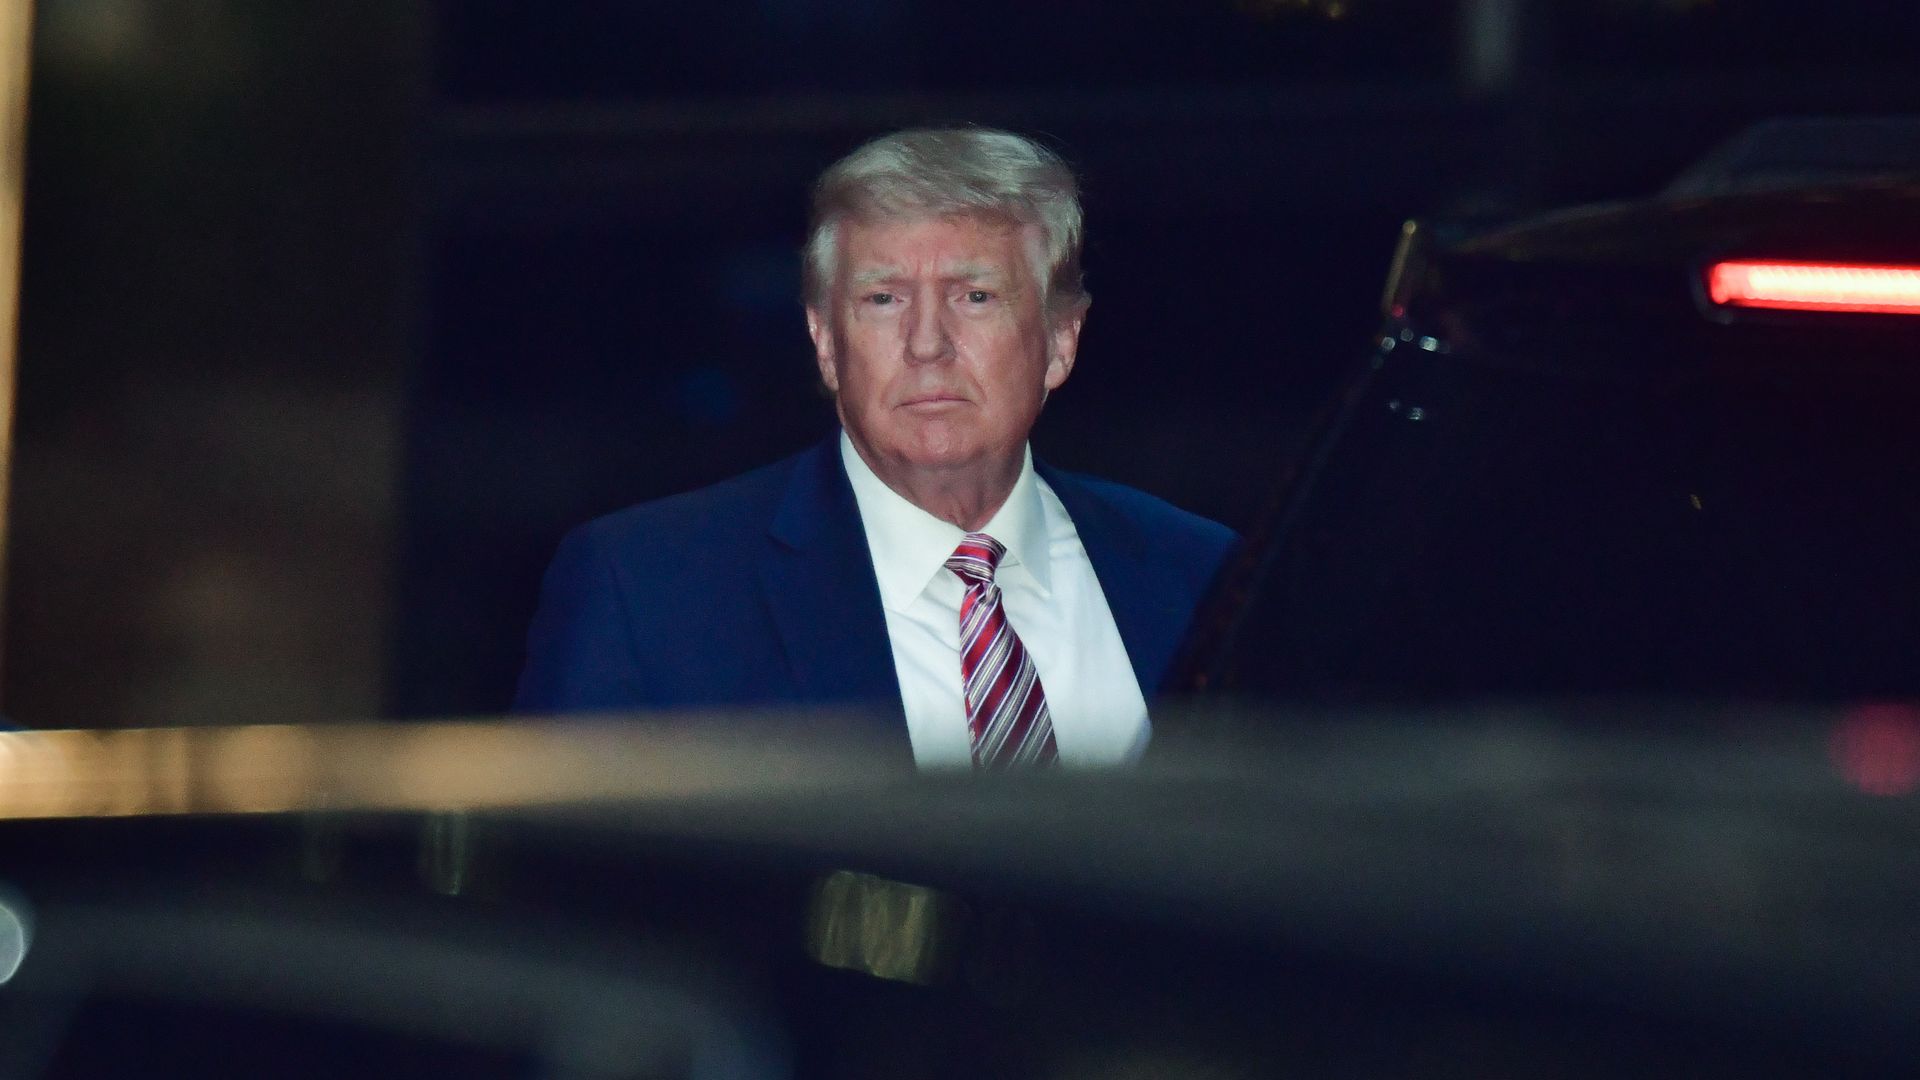 Photo of Donald Trump looking at the camera